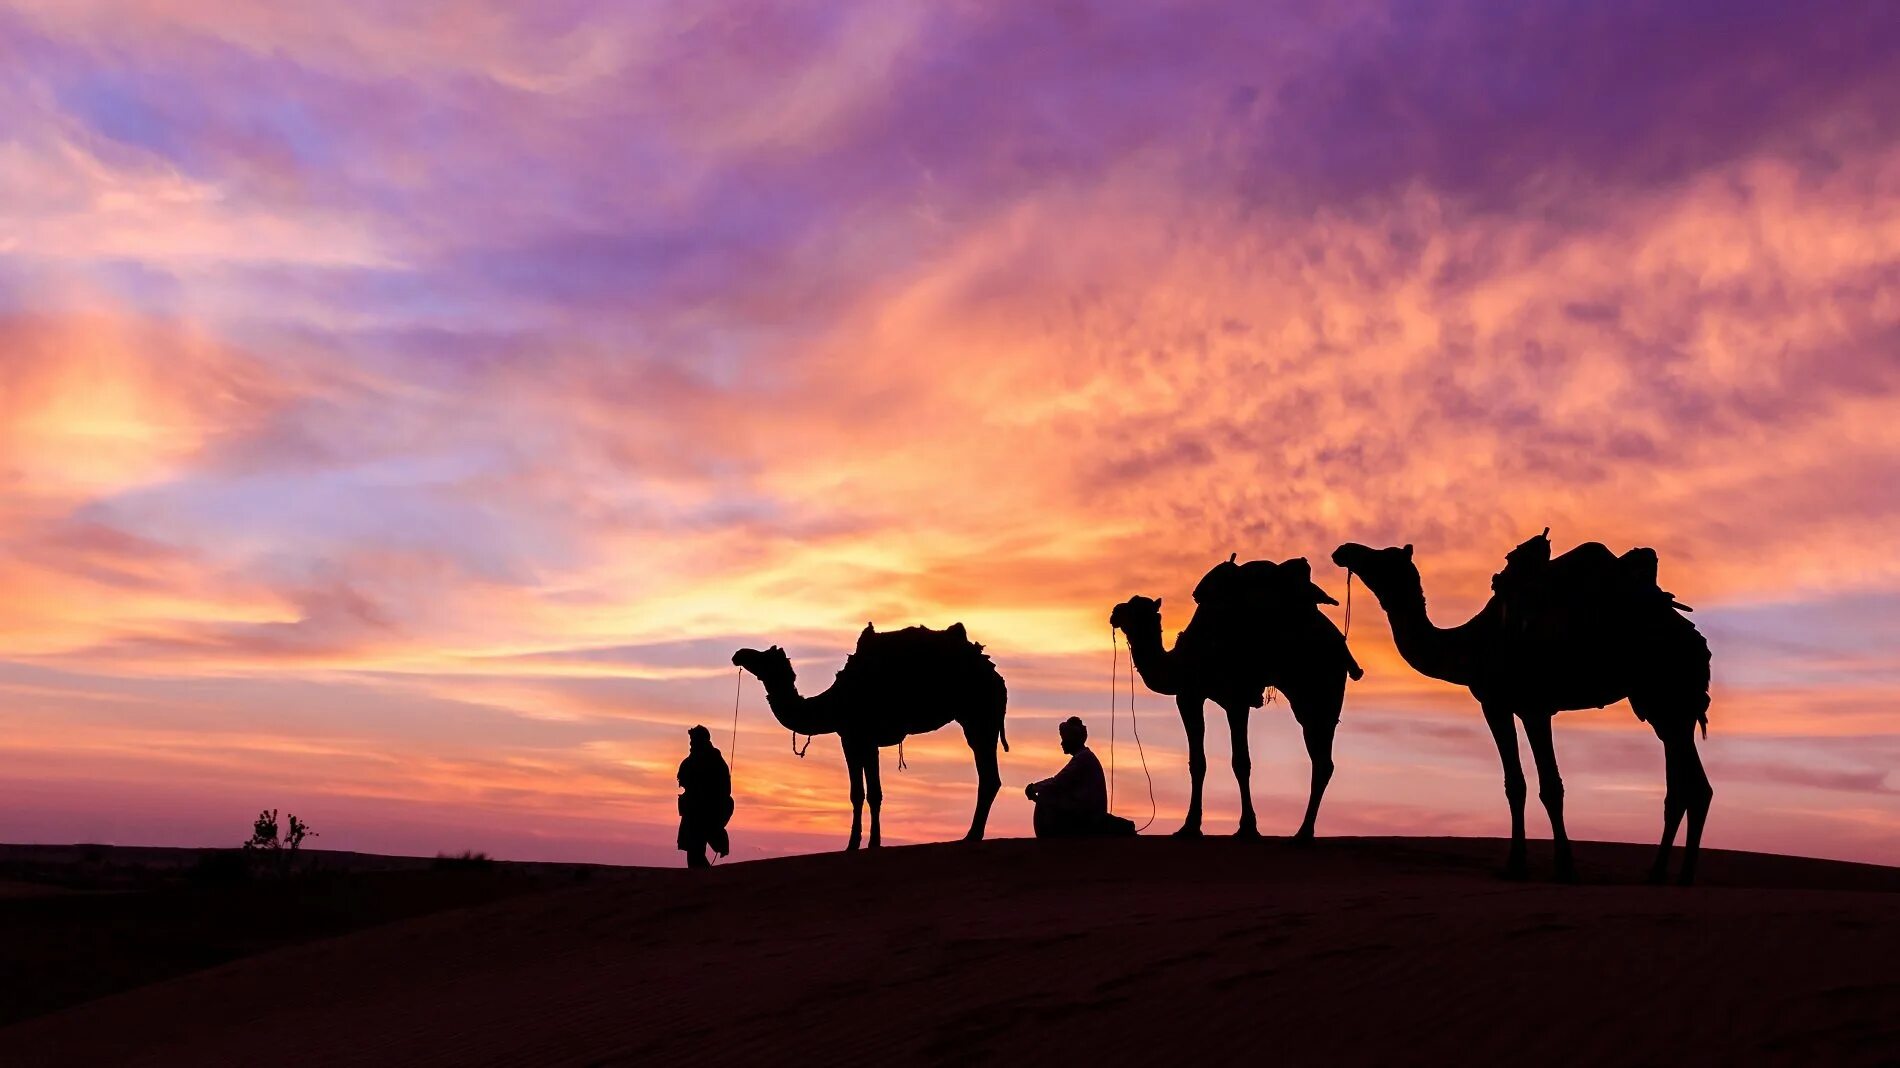 Караван называется. Караван с верблюдами в пустыне. Караван Аравийской пустыне ОАЭ. Арабы с караваном в пустыне. Караван верблюдов в пустыне.